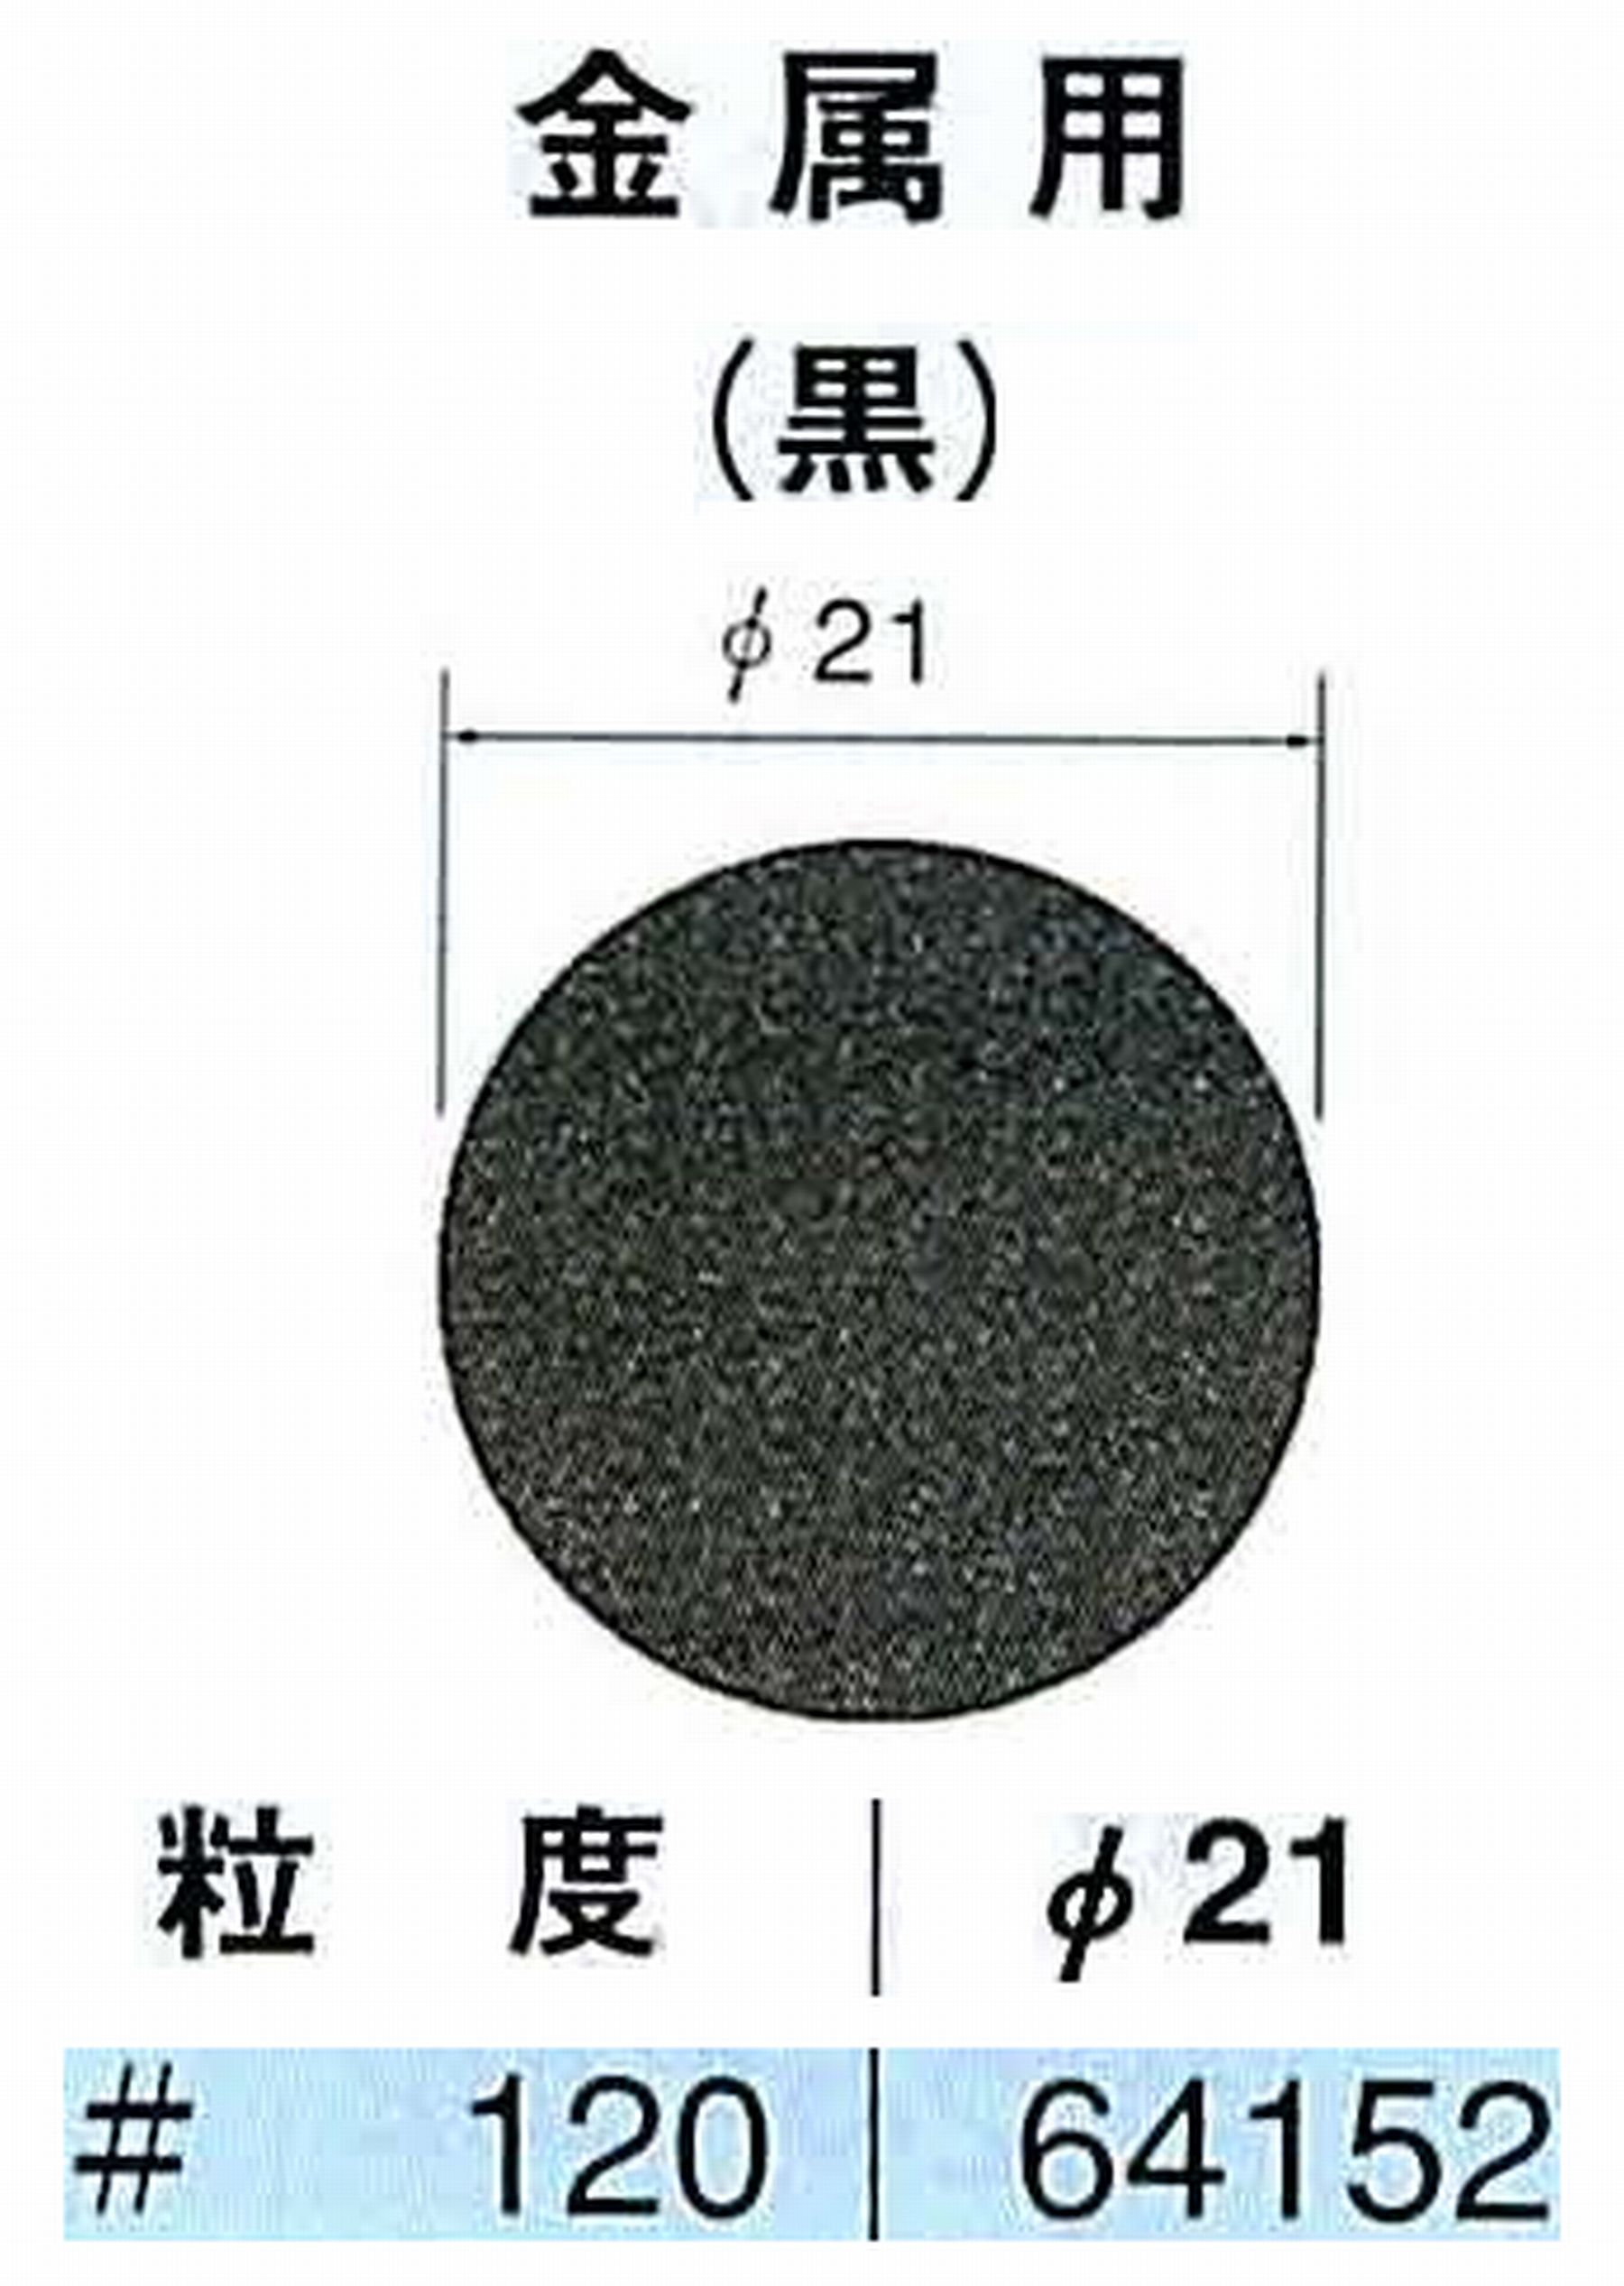 ナカニシ/NAKANISHI アングルグラインダ(電動・エアー) アングルアタッチメント専用工具 サンドペーパーディスク(紙基材タイプ)裏面のり処理 64152